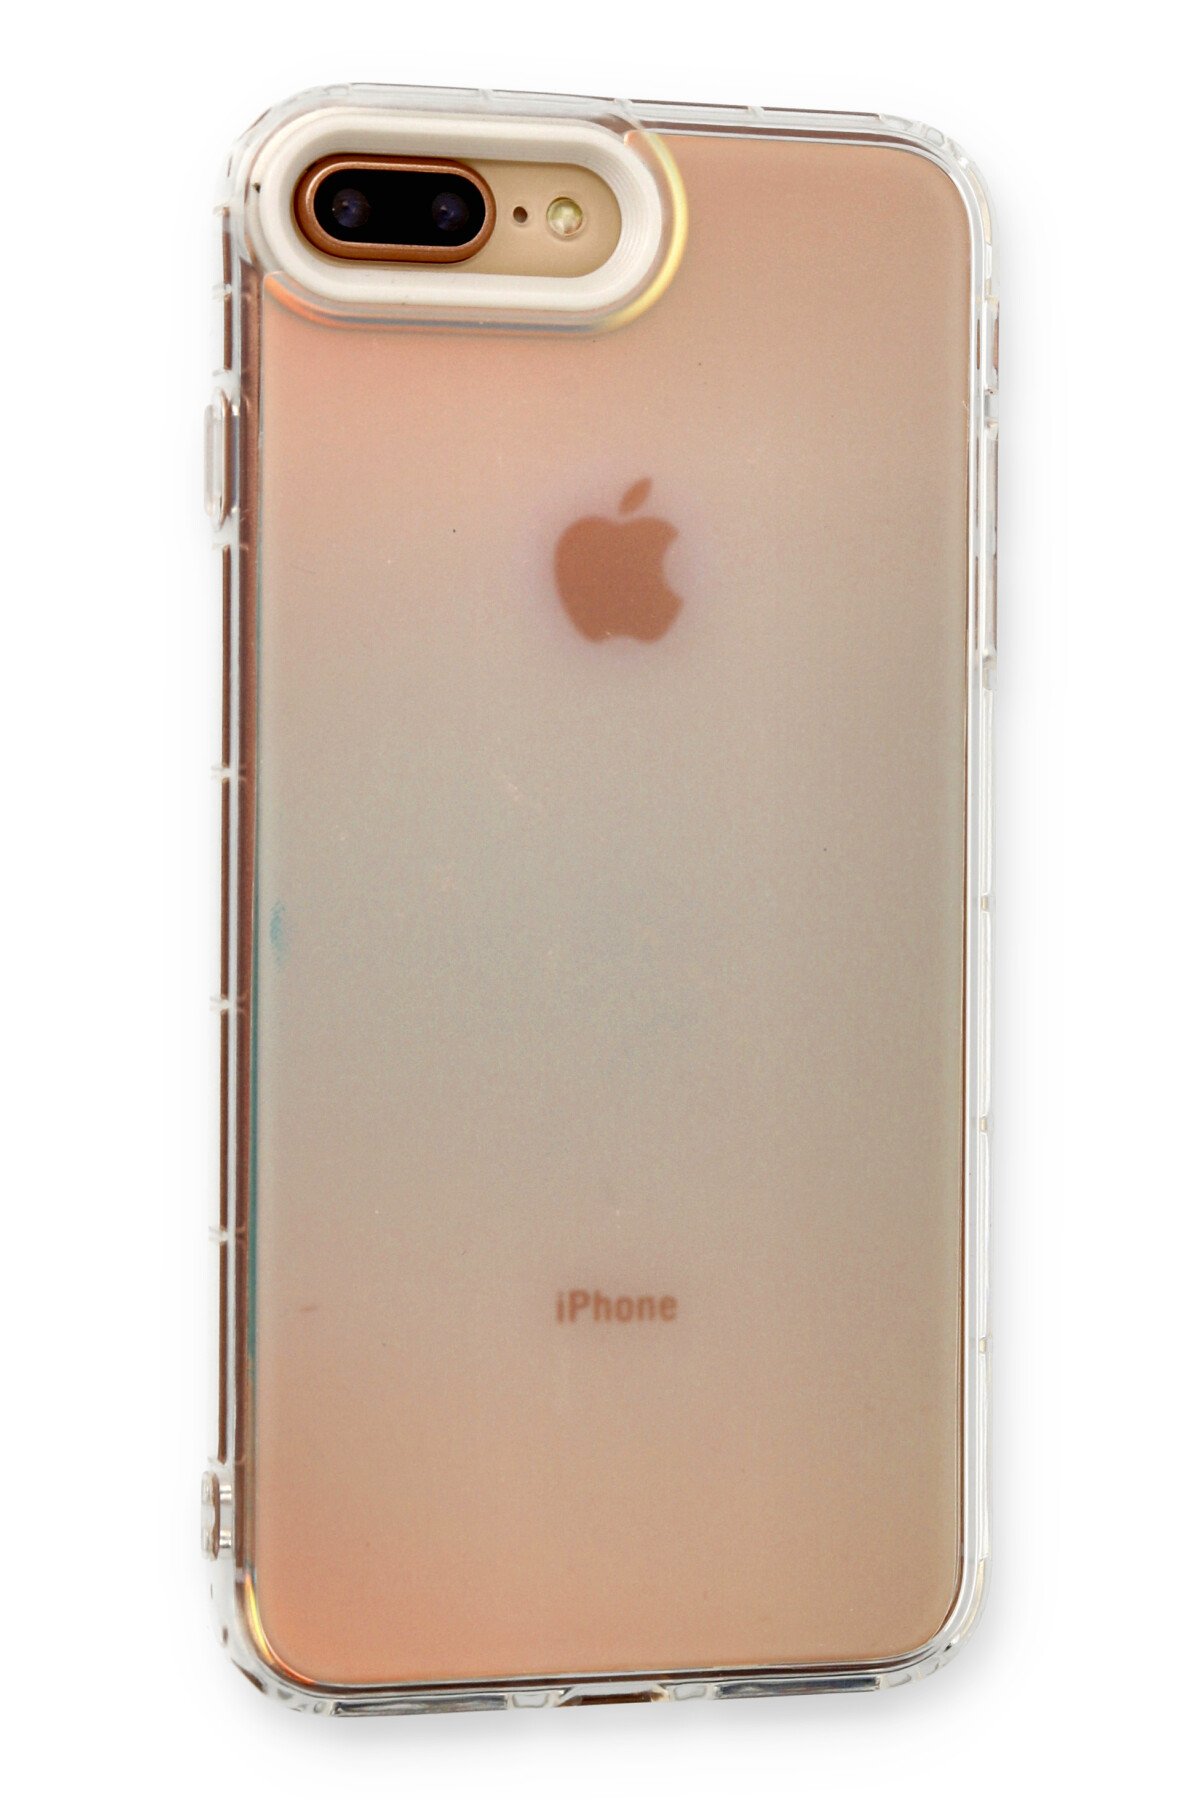 Newface iPhone 7 Plus Kılıf Zegna Yüzüklü Silikon Kapak - Koyu Yeşil